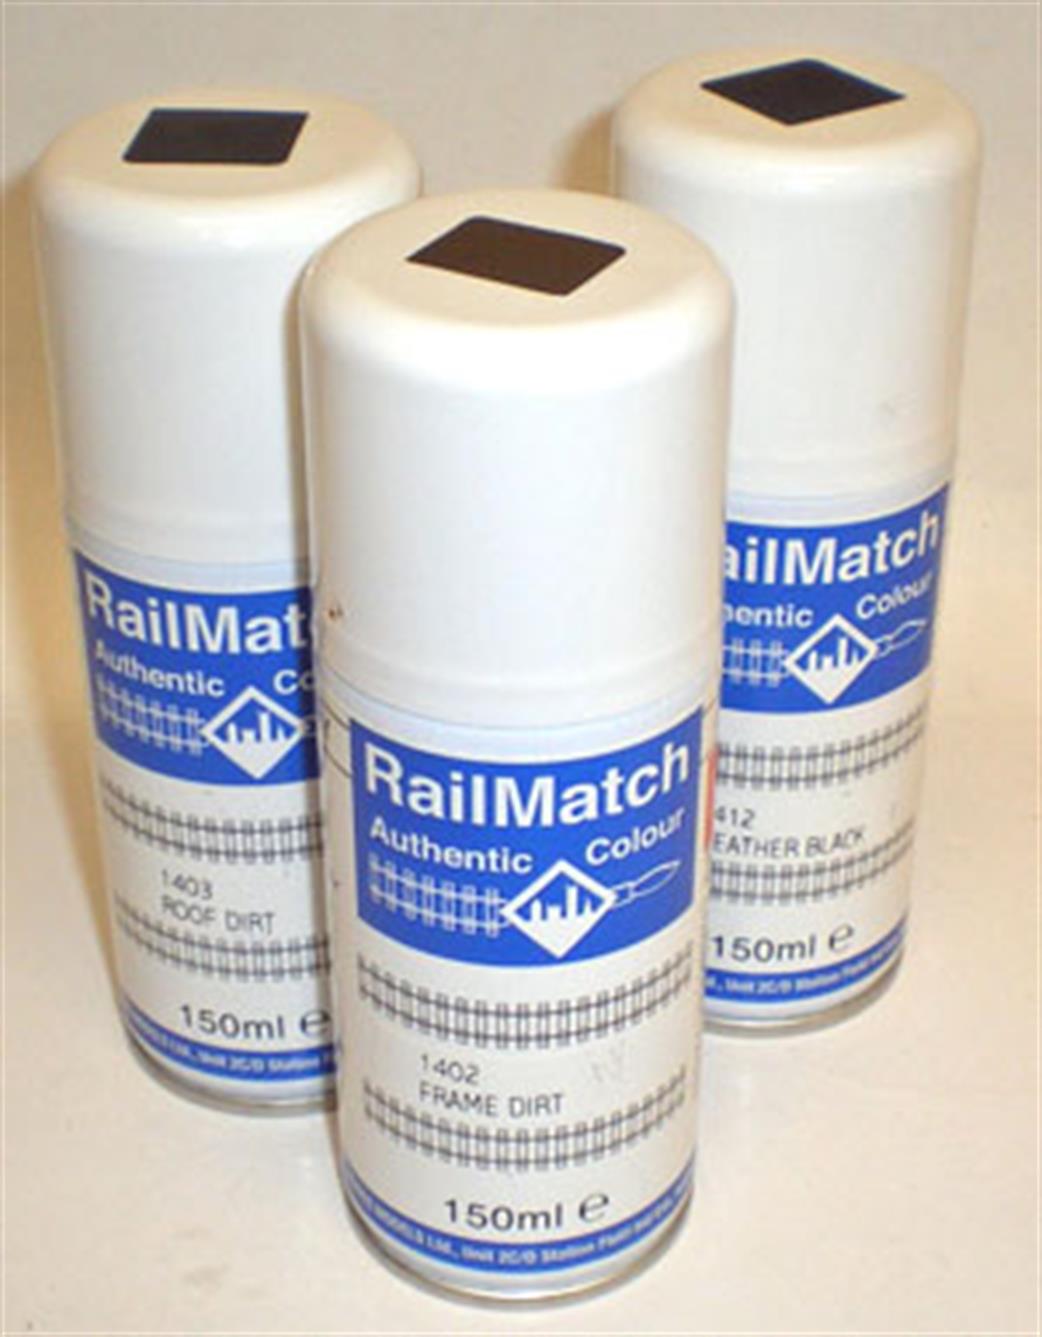 Railmatch  RM1402 Frame Dirt 150ml Enamel Aerosol